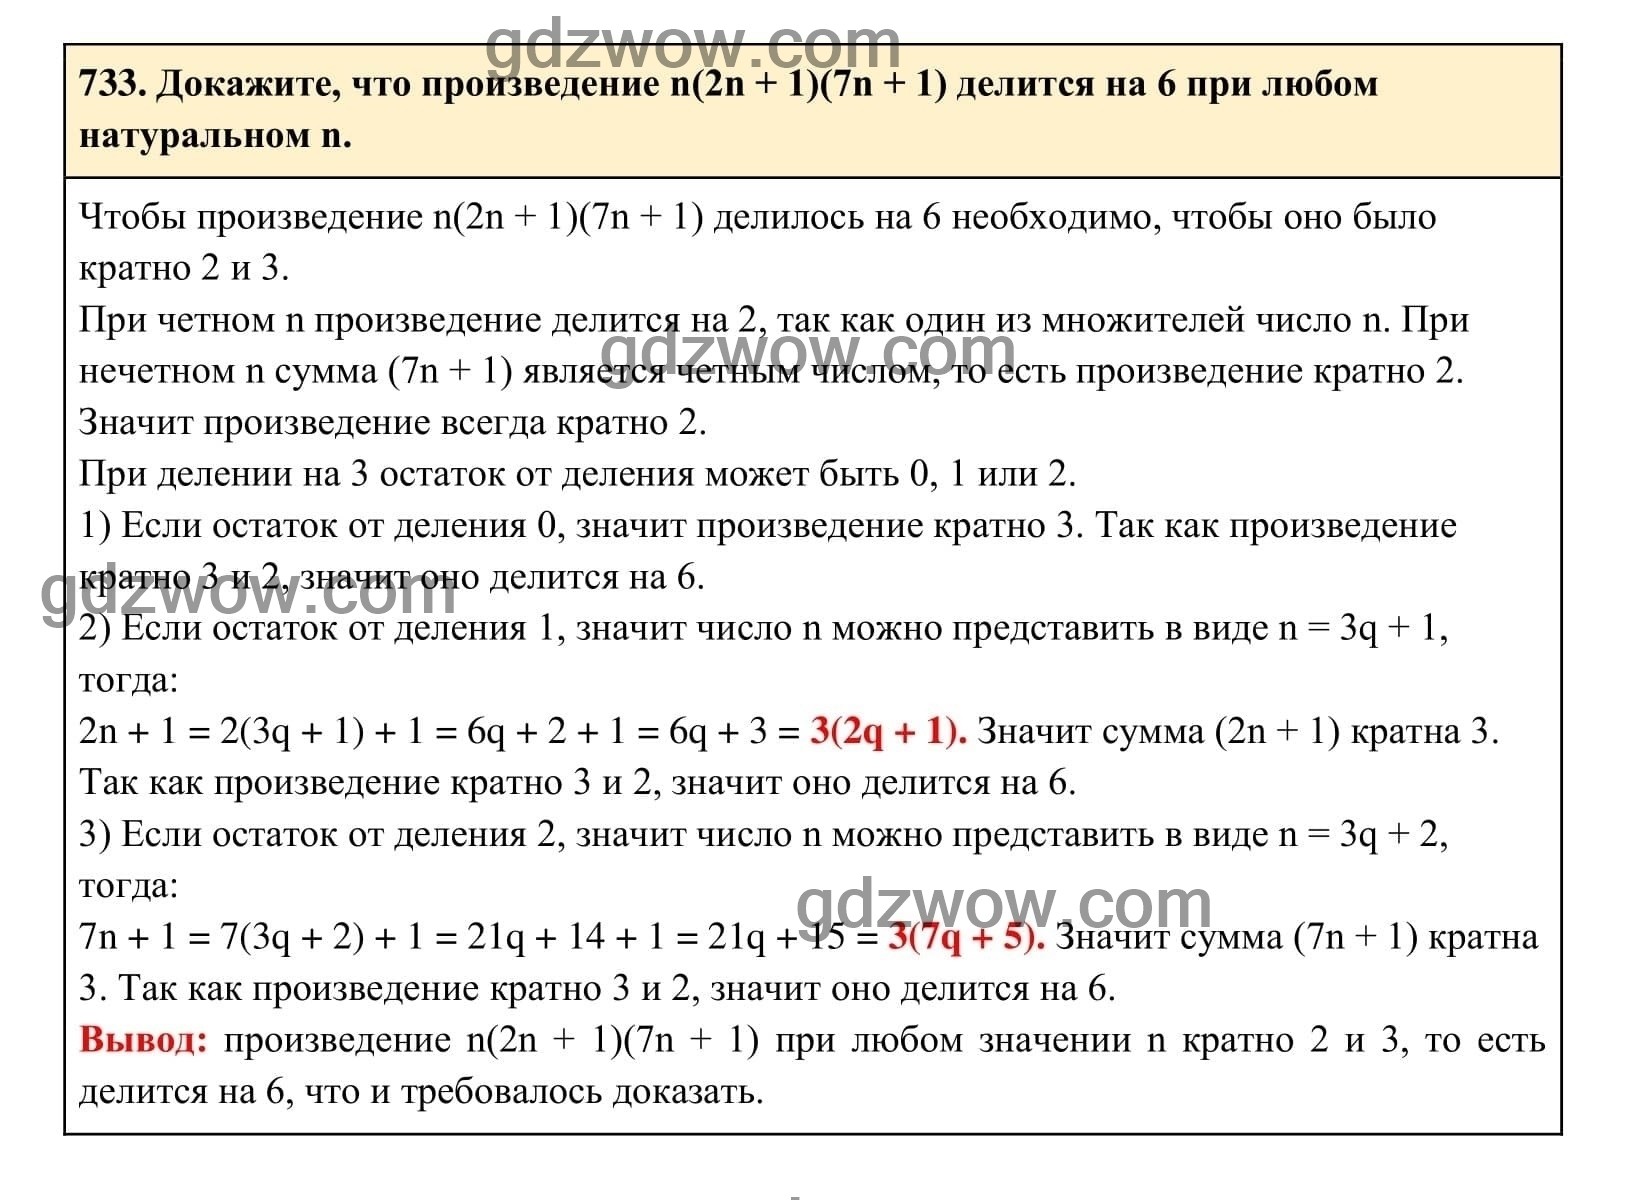 Упражнение 733 - ГДЗ по Алгебре 7 класс Учебник Макарычев (решебник) - GDZwow